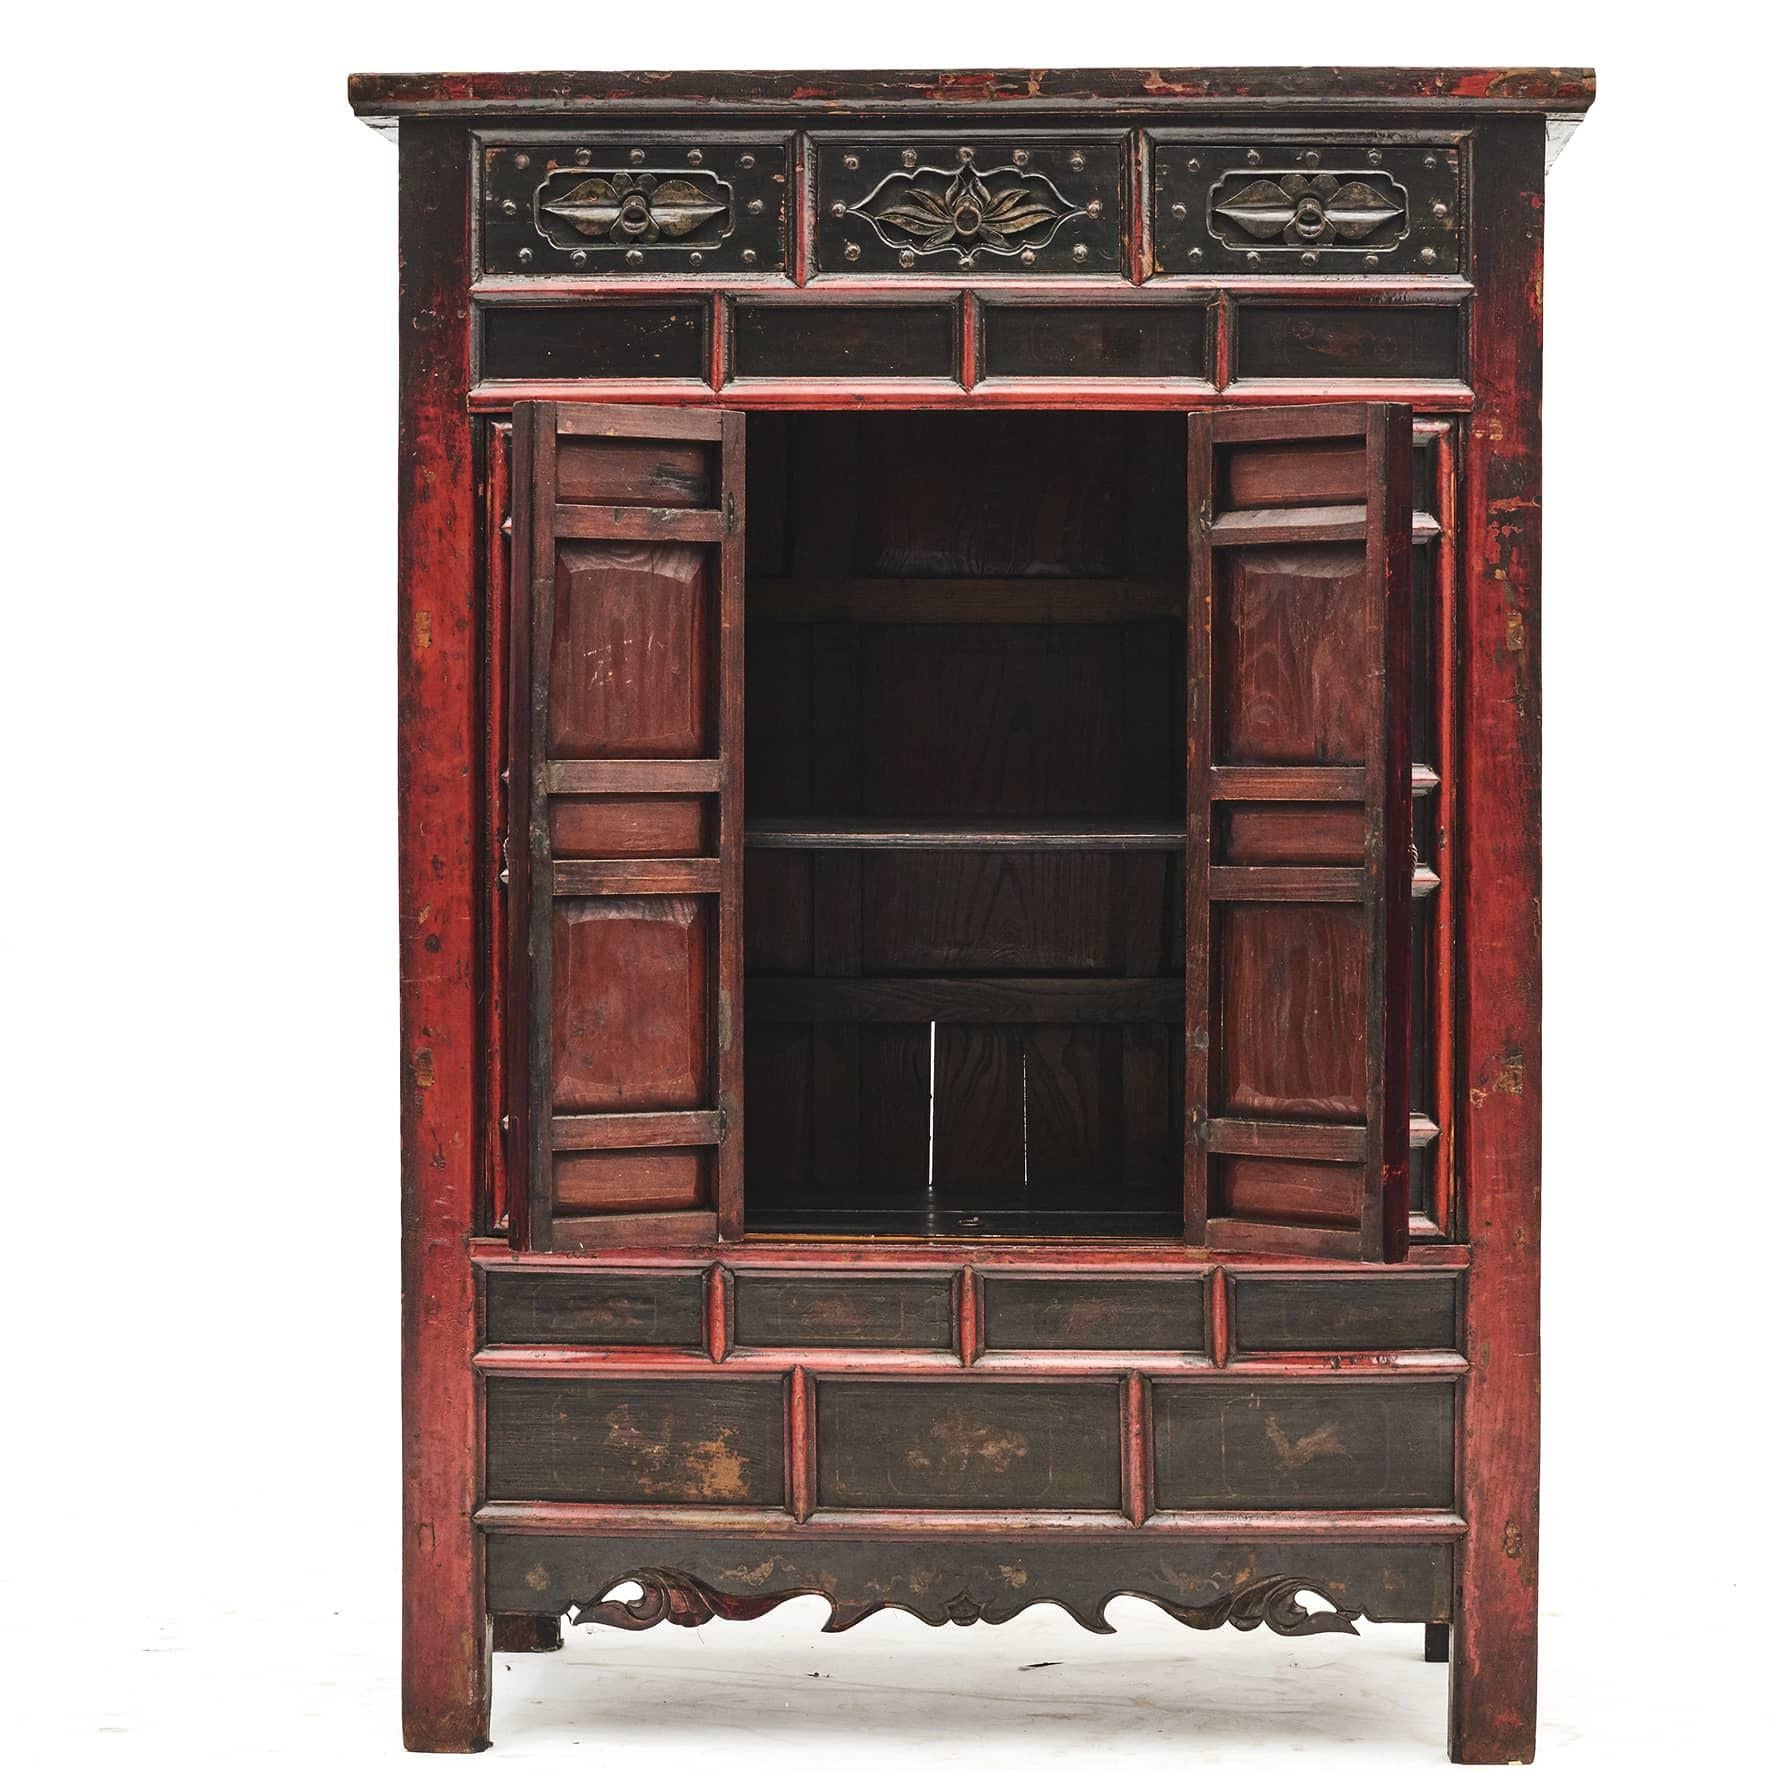 Schrank aus dem späten 18. Jahrhundert aus Shanxi, China.
Originaler rot-schwarzer Lack mit leichter Klarlackierung, die die schöne natürliche Patina hervorhebt.
Ein Paar zweiflügelige Türen mit Verzierungen und 3 Schubladen mit Schnitzereien auf